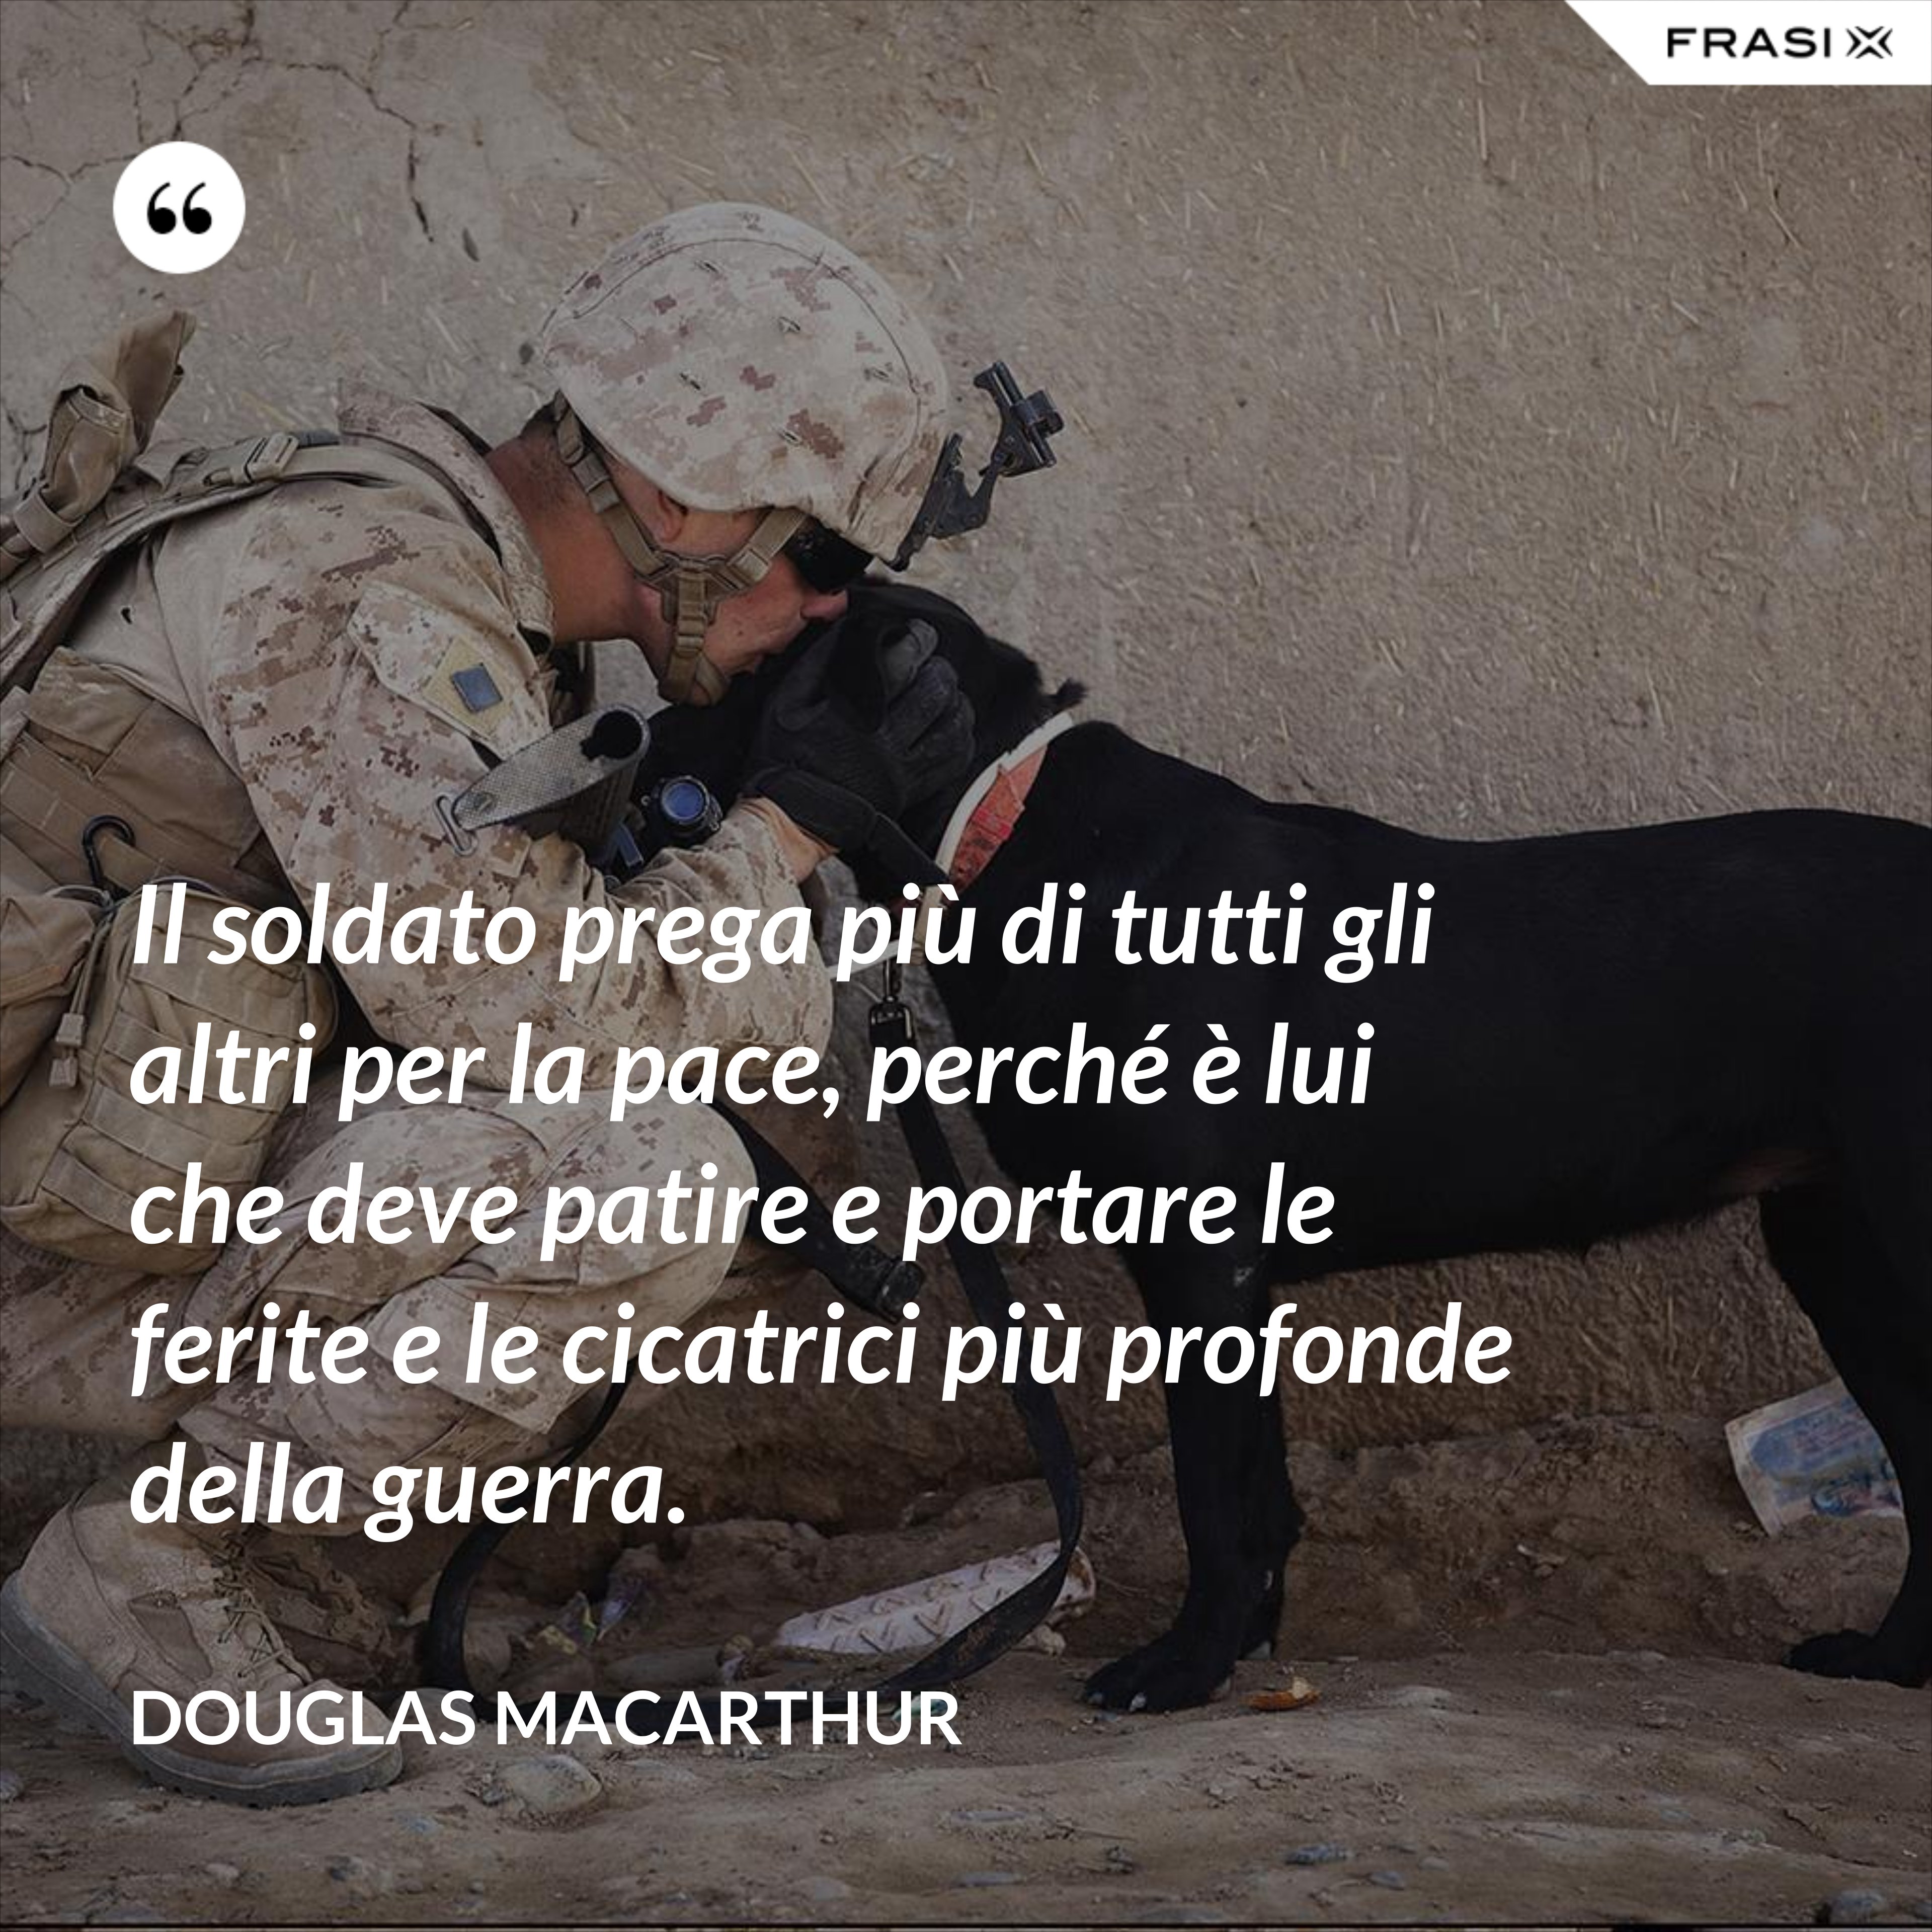 Il soldato prega più di tutti gli altri per la pace, perché è lui che deve patire e portare le ferite e le cicatrici più profonde della guerra. - Douglas Macarthur